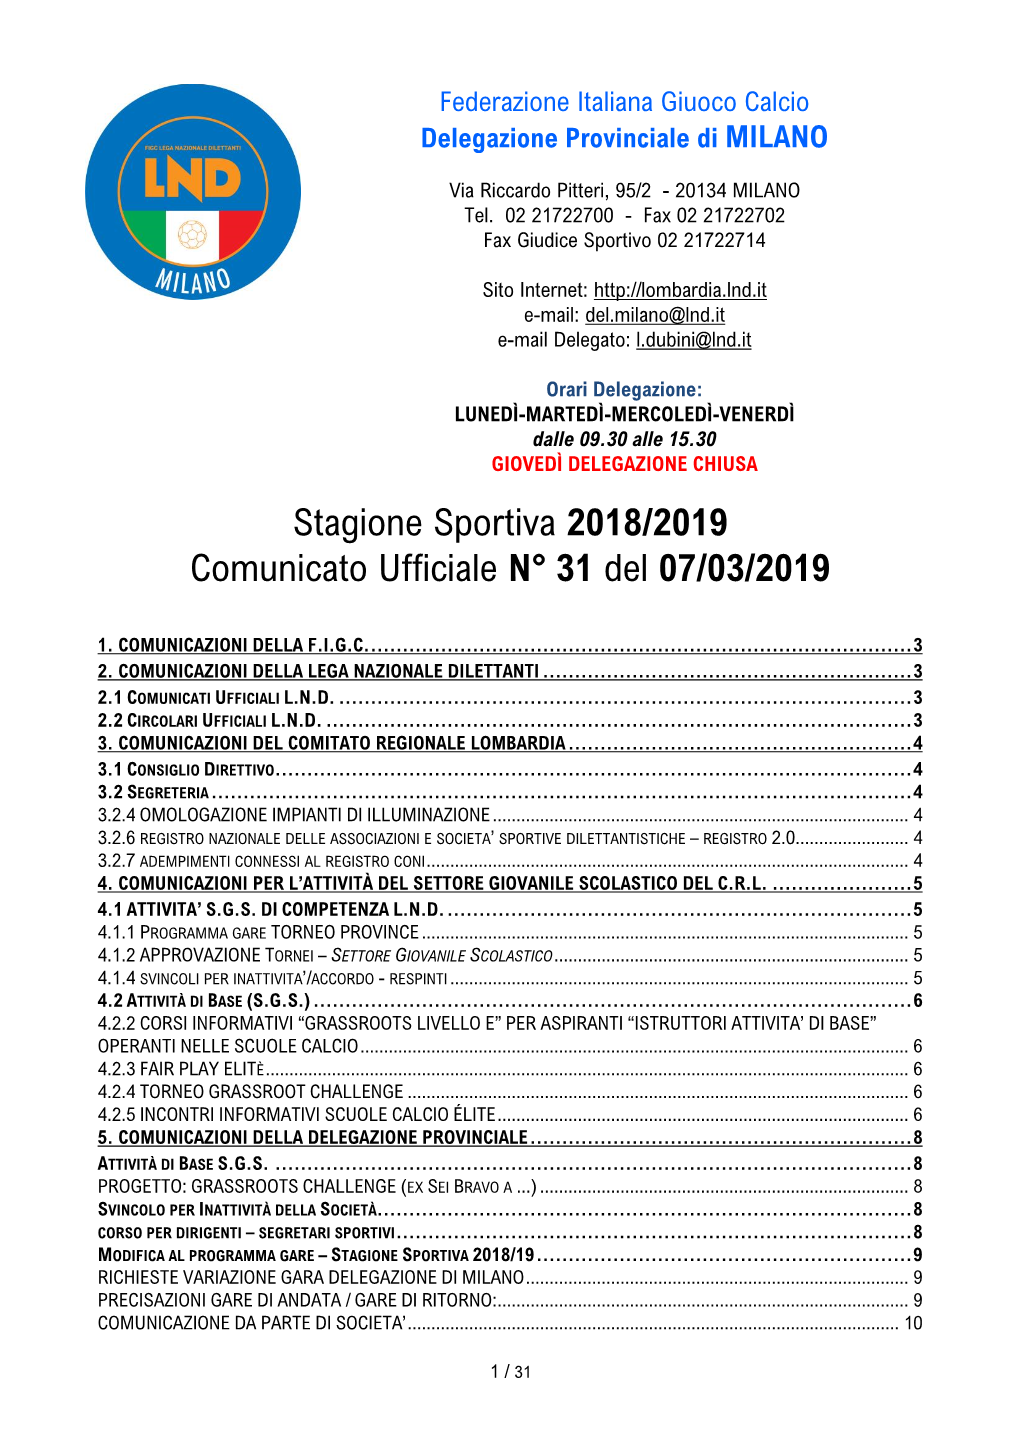 Stagione Sportiva 2018/2019 Comunicato Ufficiale N° 31 Del 07/03/2019